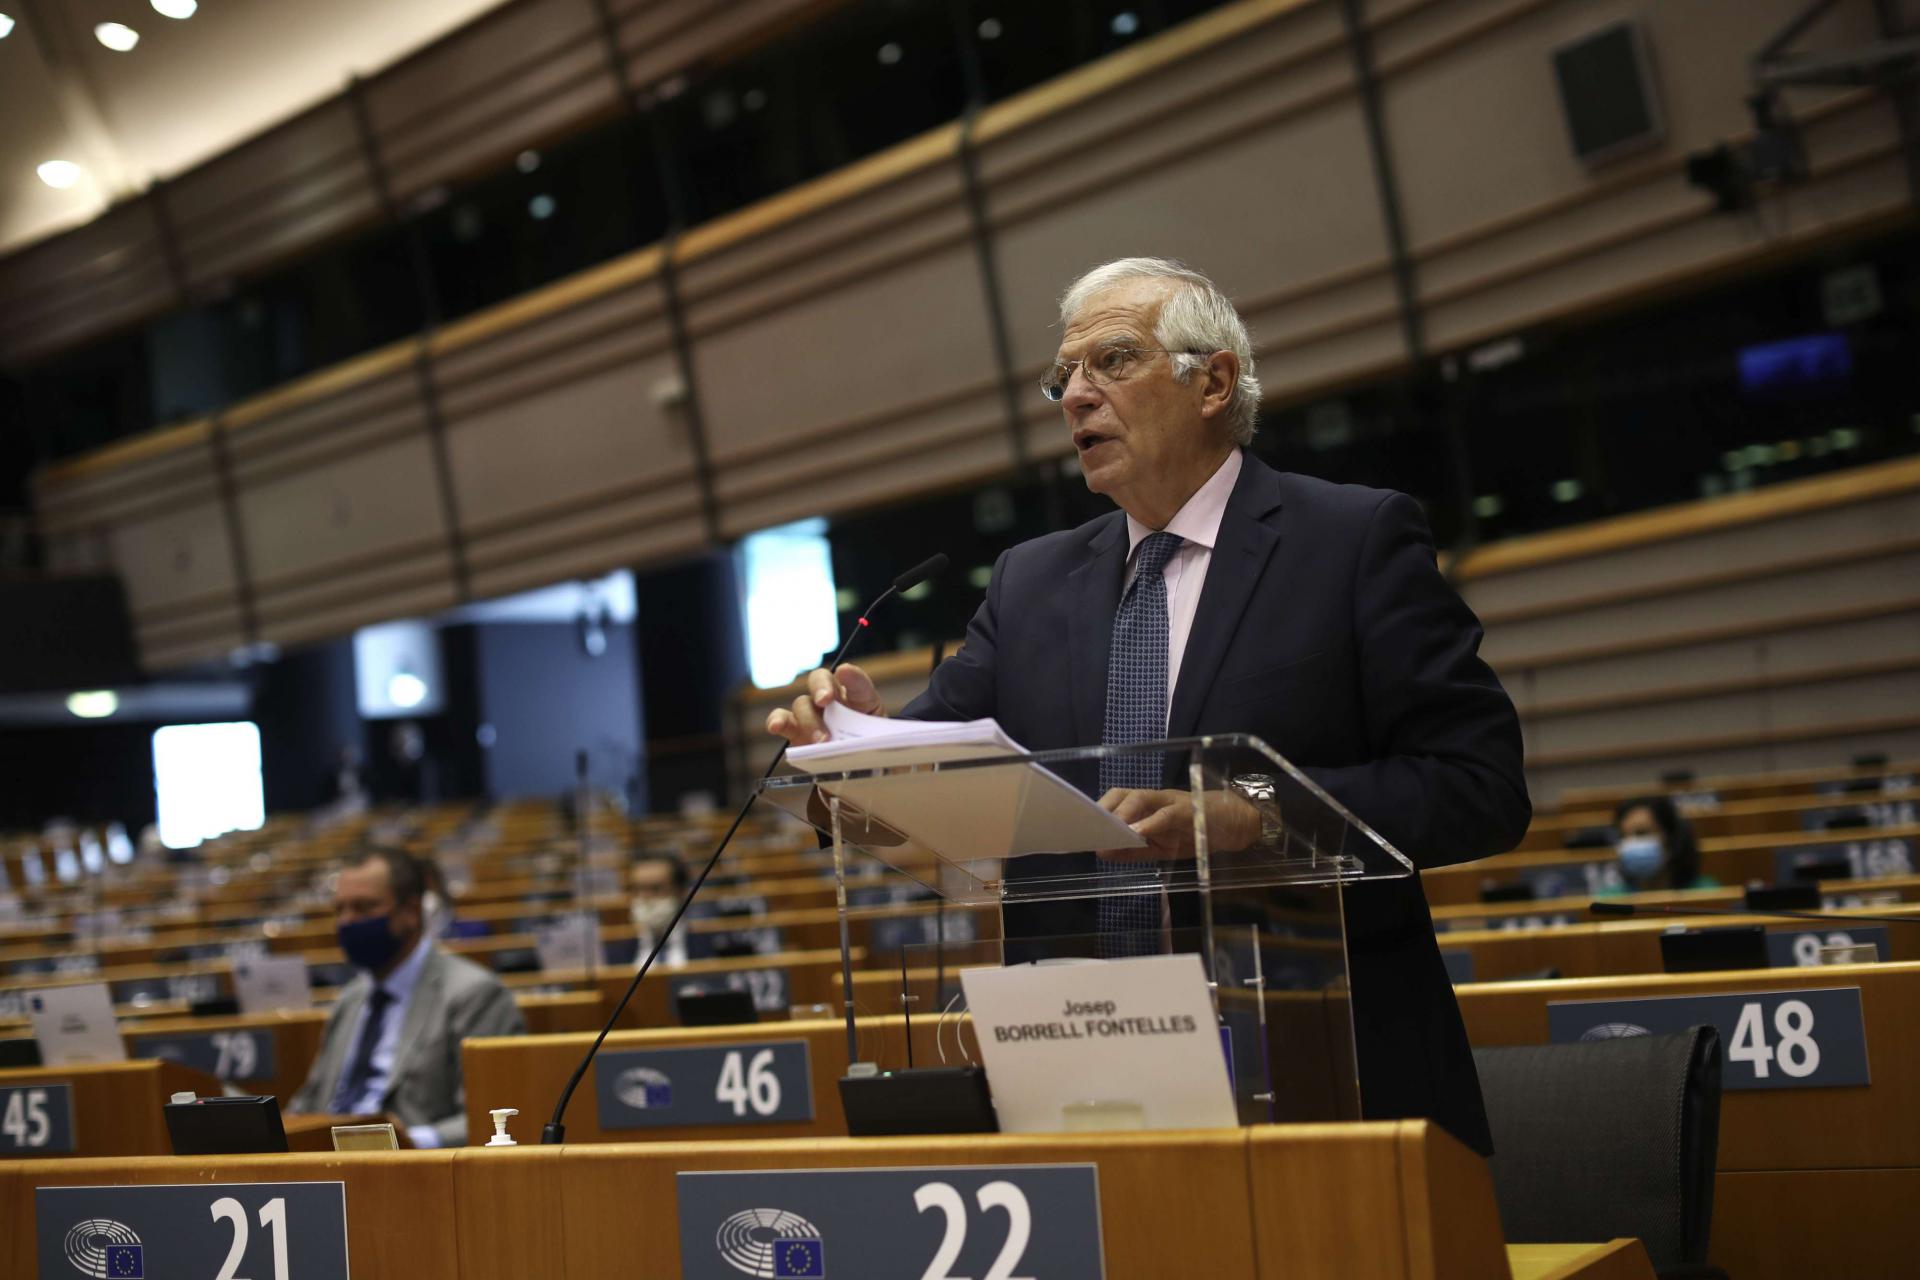  جوزيب بوريل في جلسة للبرلمان الأوروبي